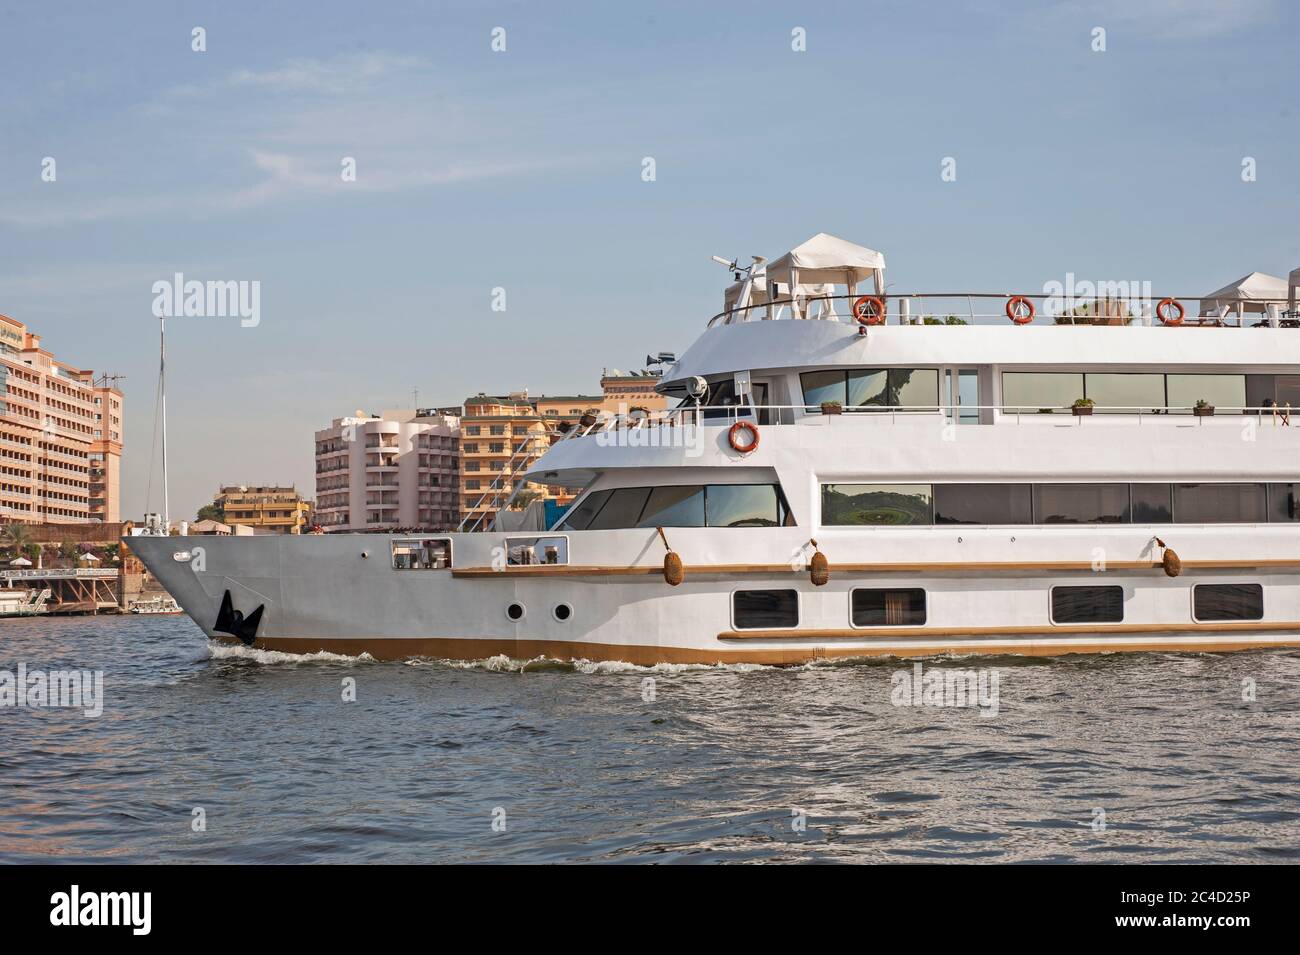 Grand luxe croisière égyptienne traditionnelle bateau naviguant sur le Nil Banque D'Images